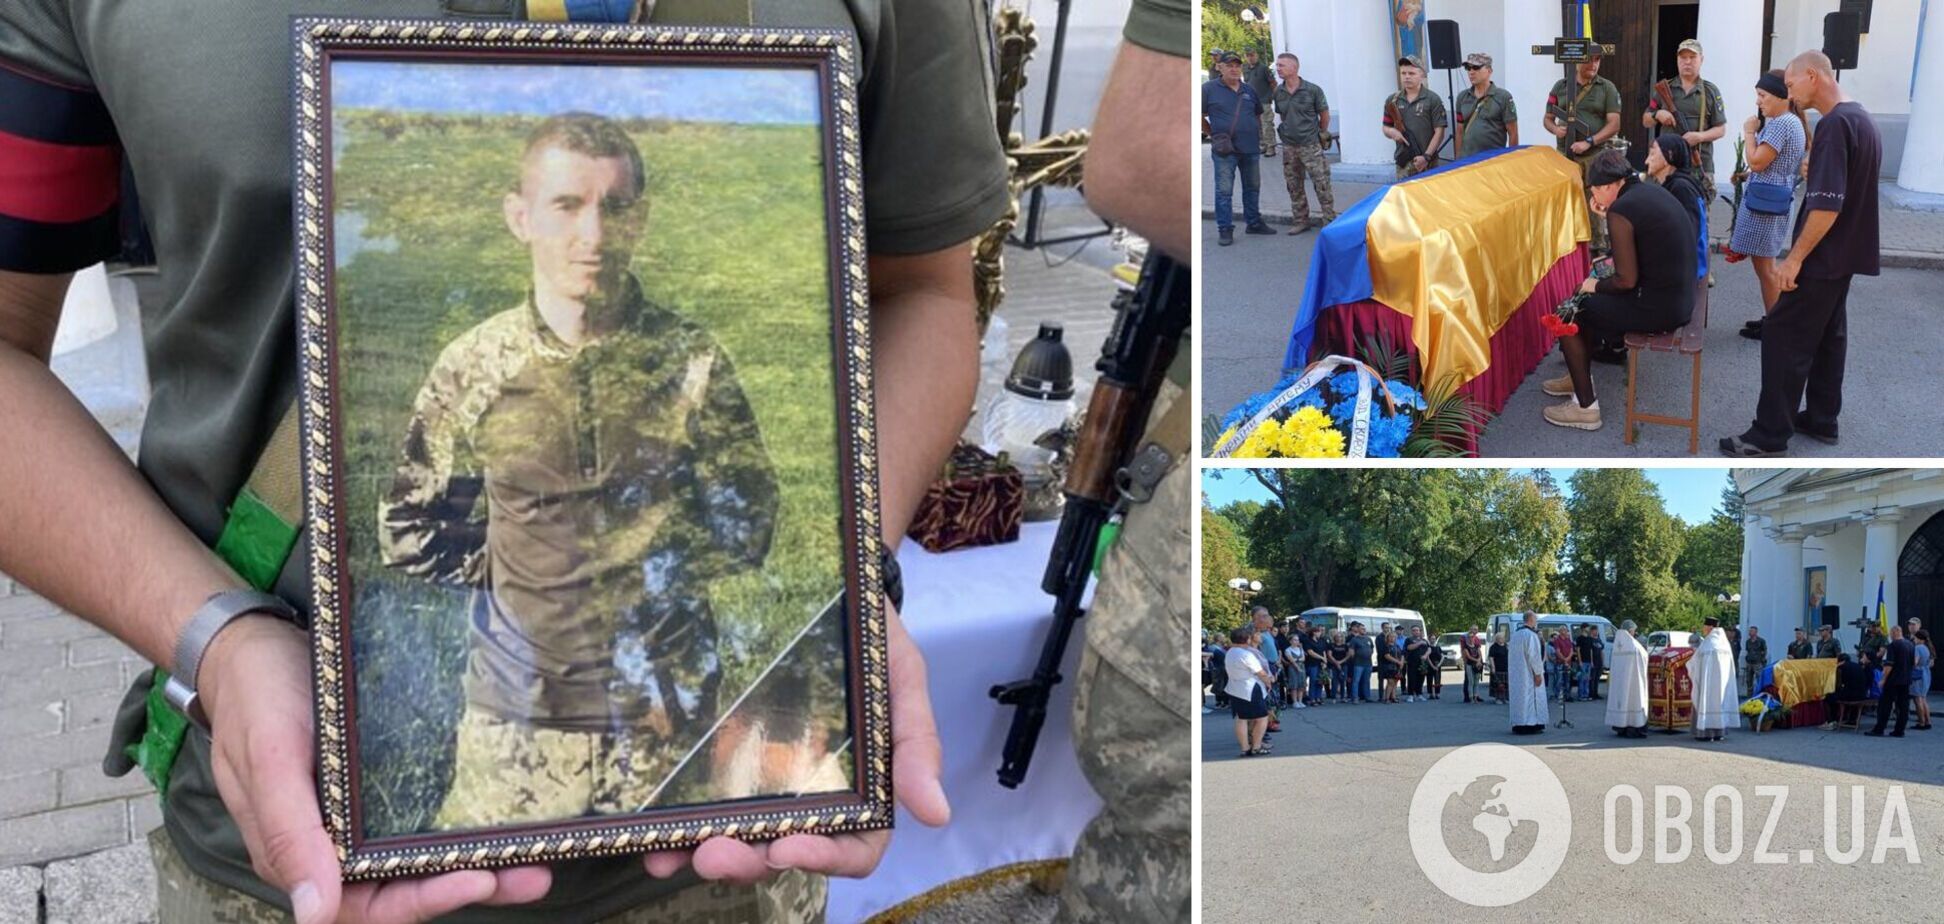 В Полтаве попрощались с 22-летним воином, погибшим в боях за Украину: у него остались беременная жена и маленький сын. Фото